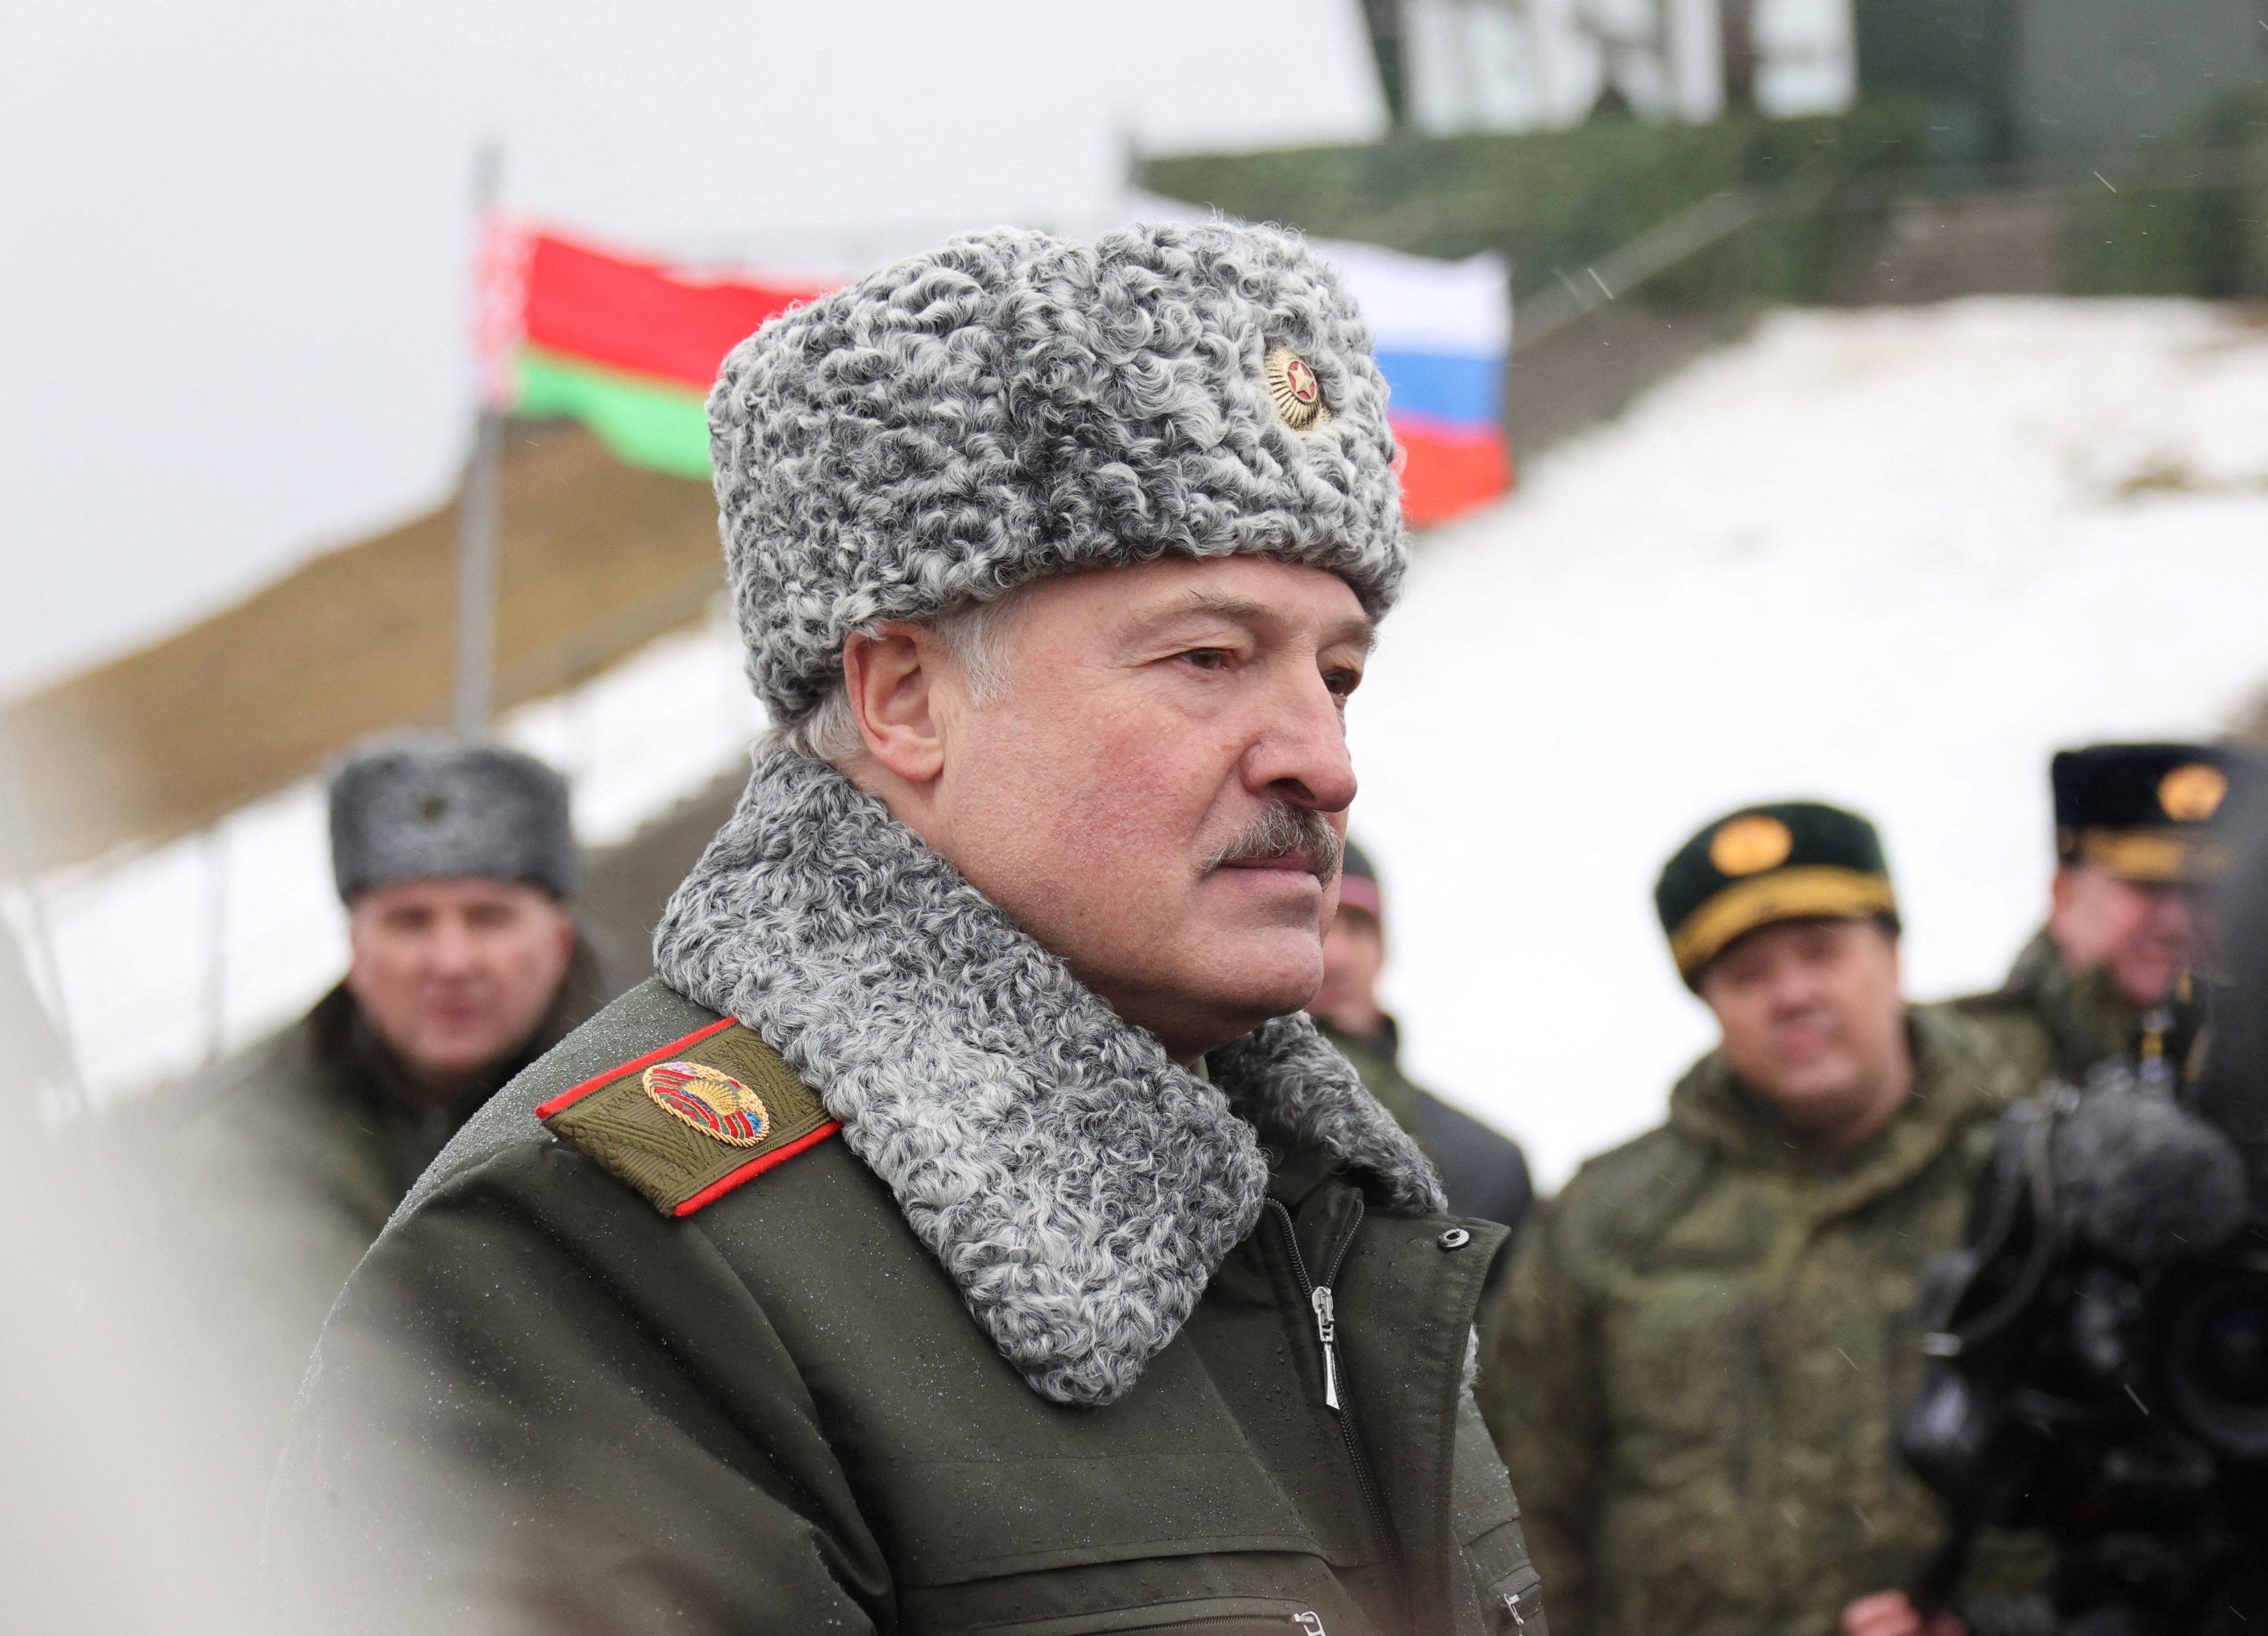 La herramienta favorita de la dictadura de Lukashenko en Bielorrusia para humillar a los opositores